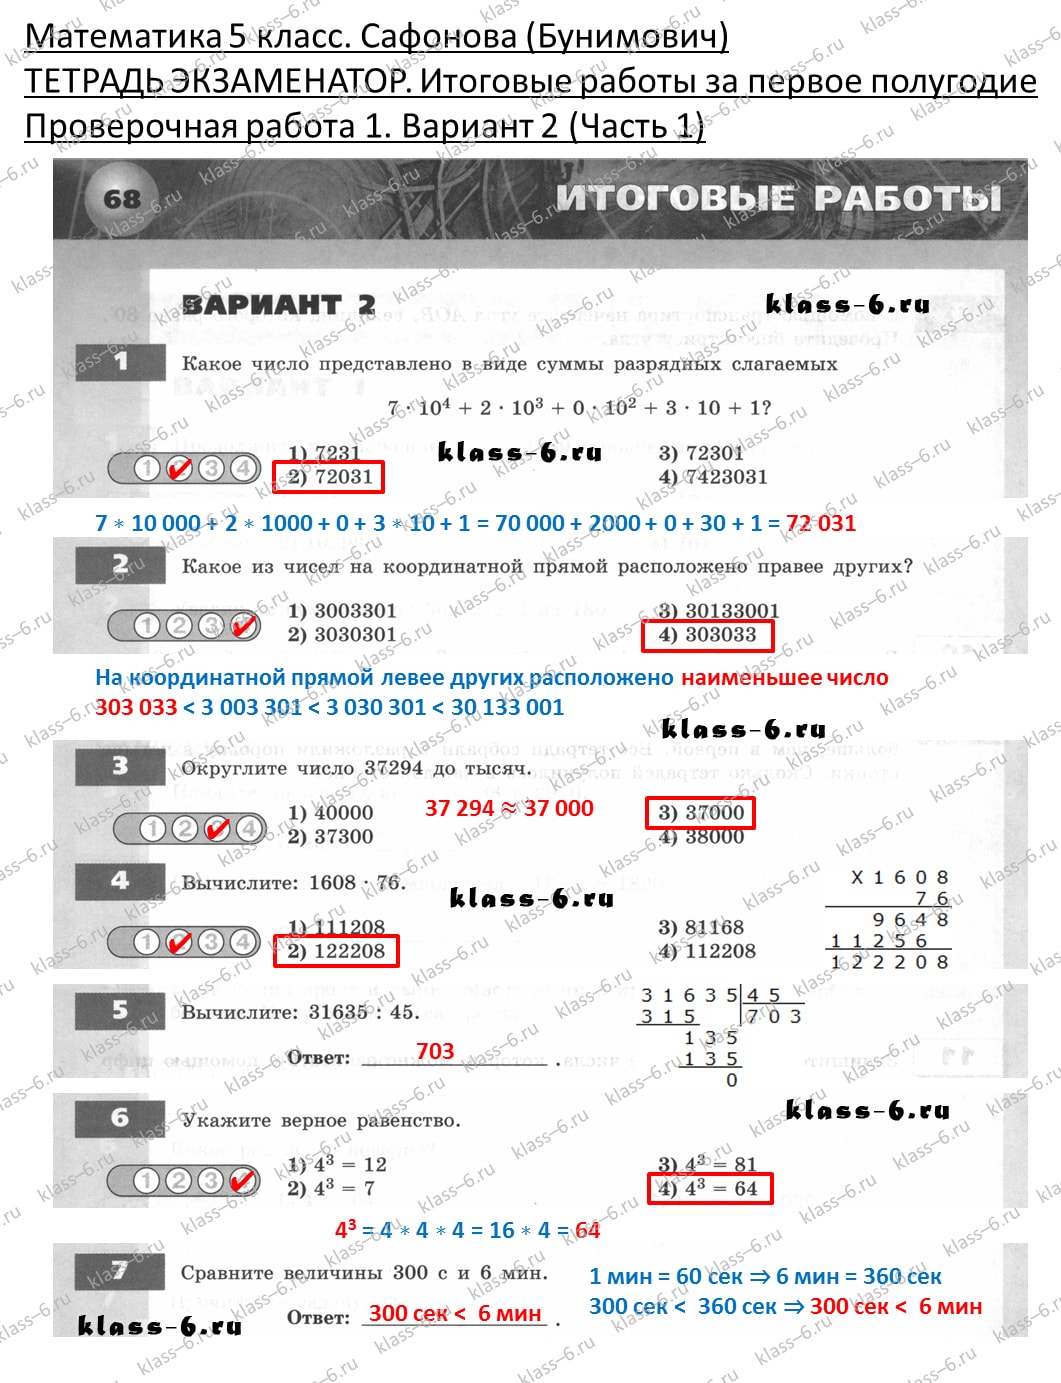 решебник и гдз по математике тетрадь экзаменатор Сафонова, Бунимович 5 класс 1 полугодие, контрольная работа 1 вариант 2 (1)